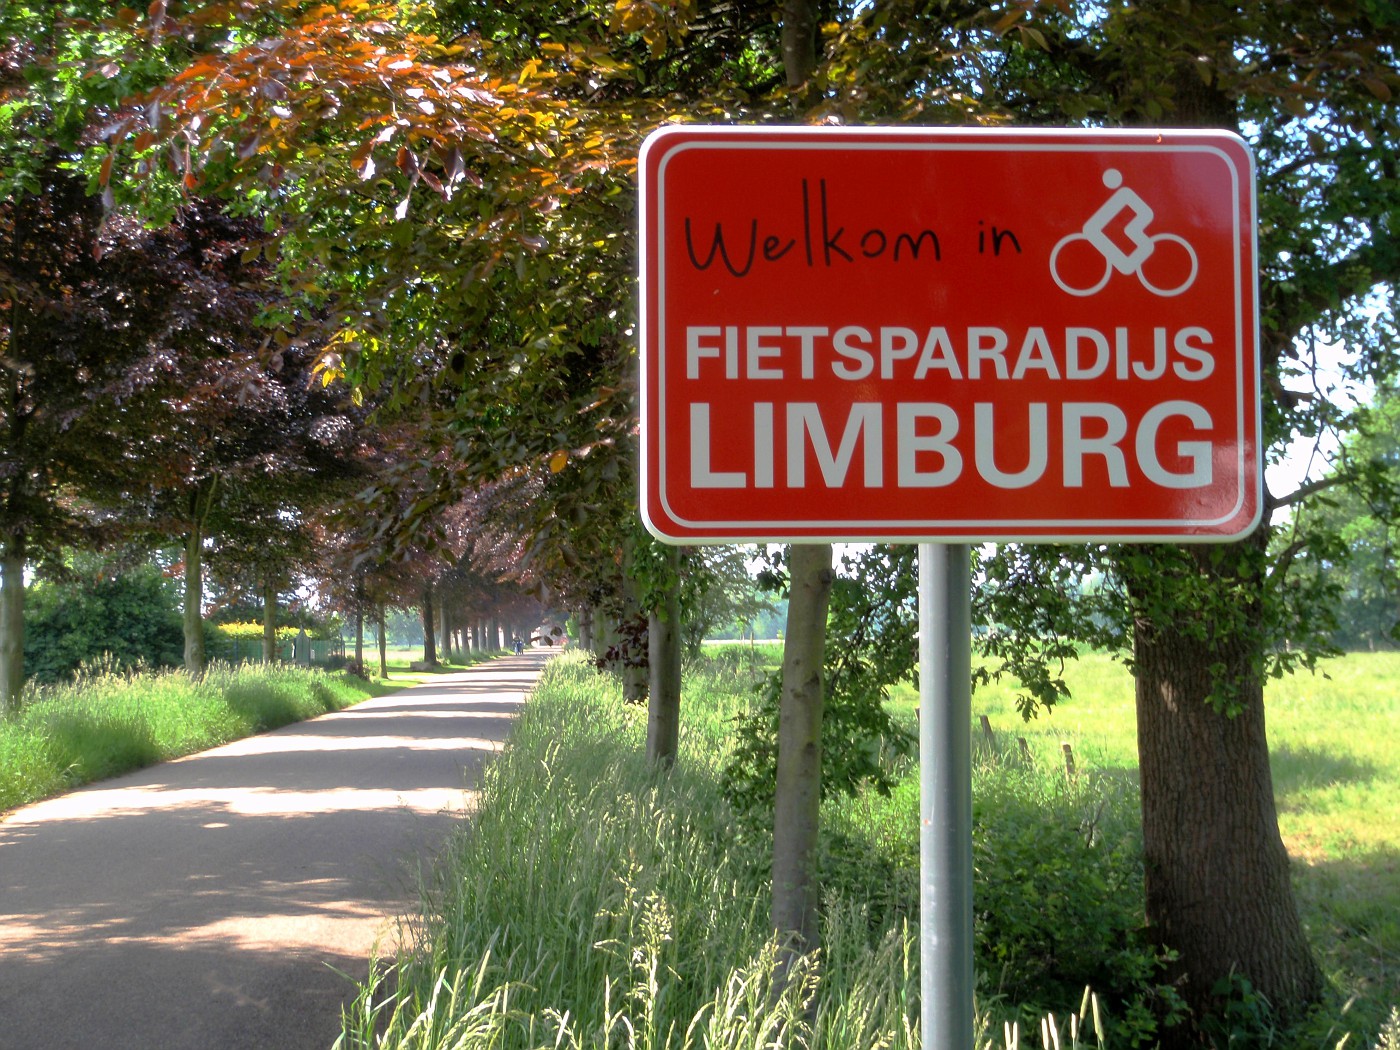 Fietsparadijs Limburg